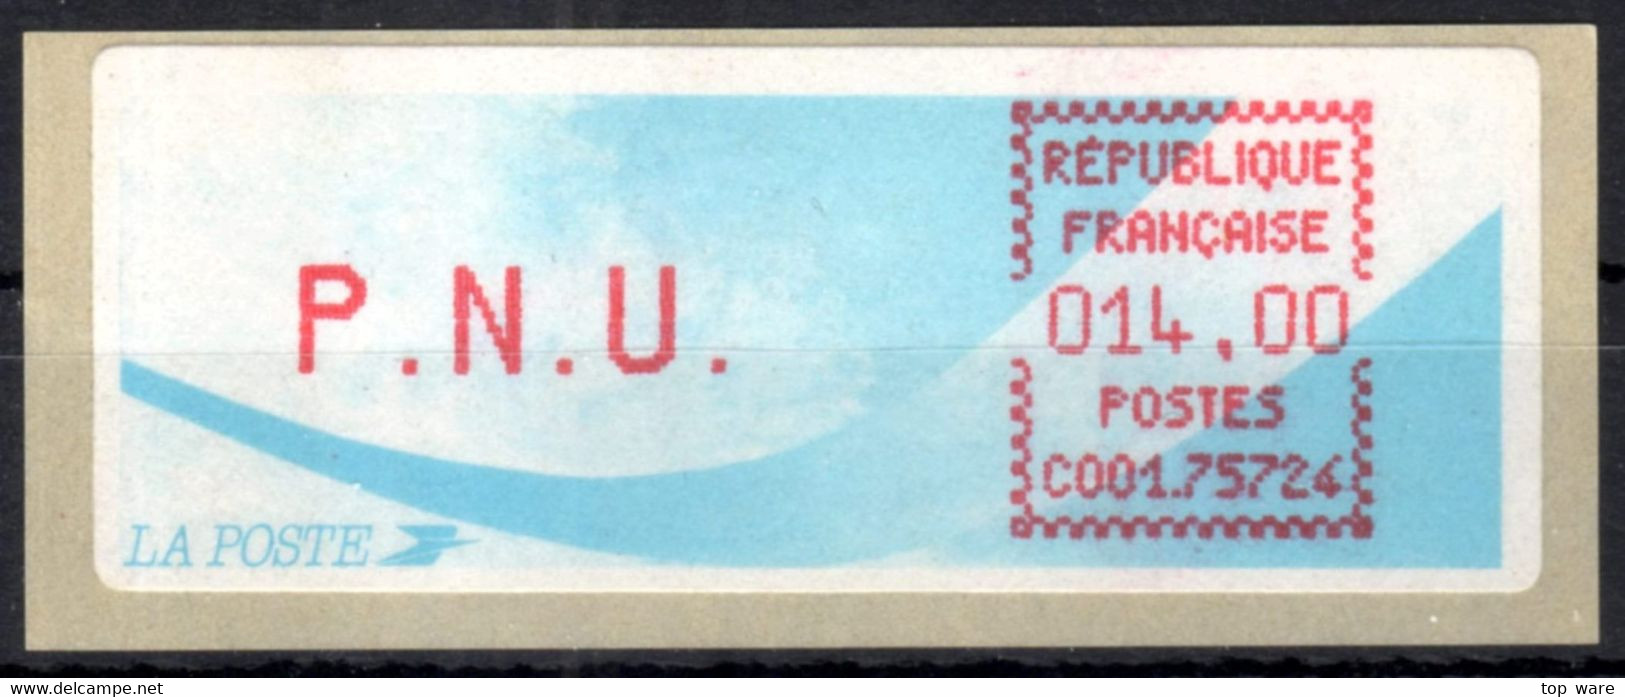 Frankreich France ATM Stamps LSA C001.75724 Paris 124 / Michel 9.9 B / PNU 14,00 ** / Distributeurs Automatenmarken - 1988 Type « Comète »